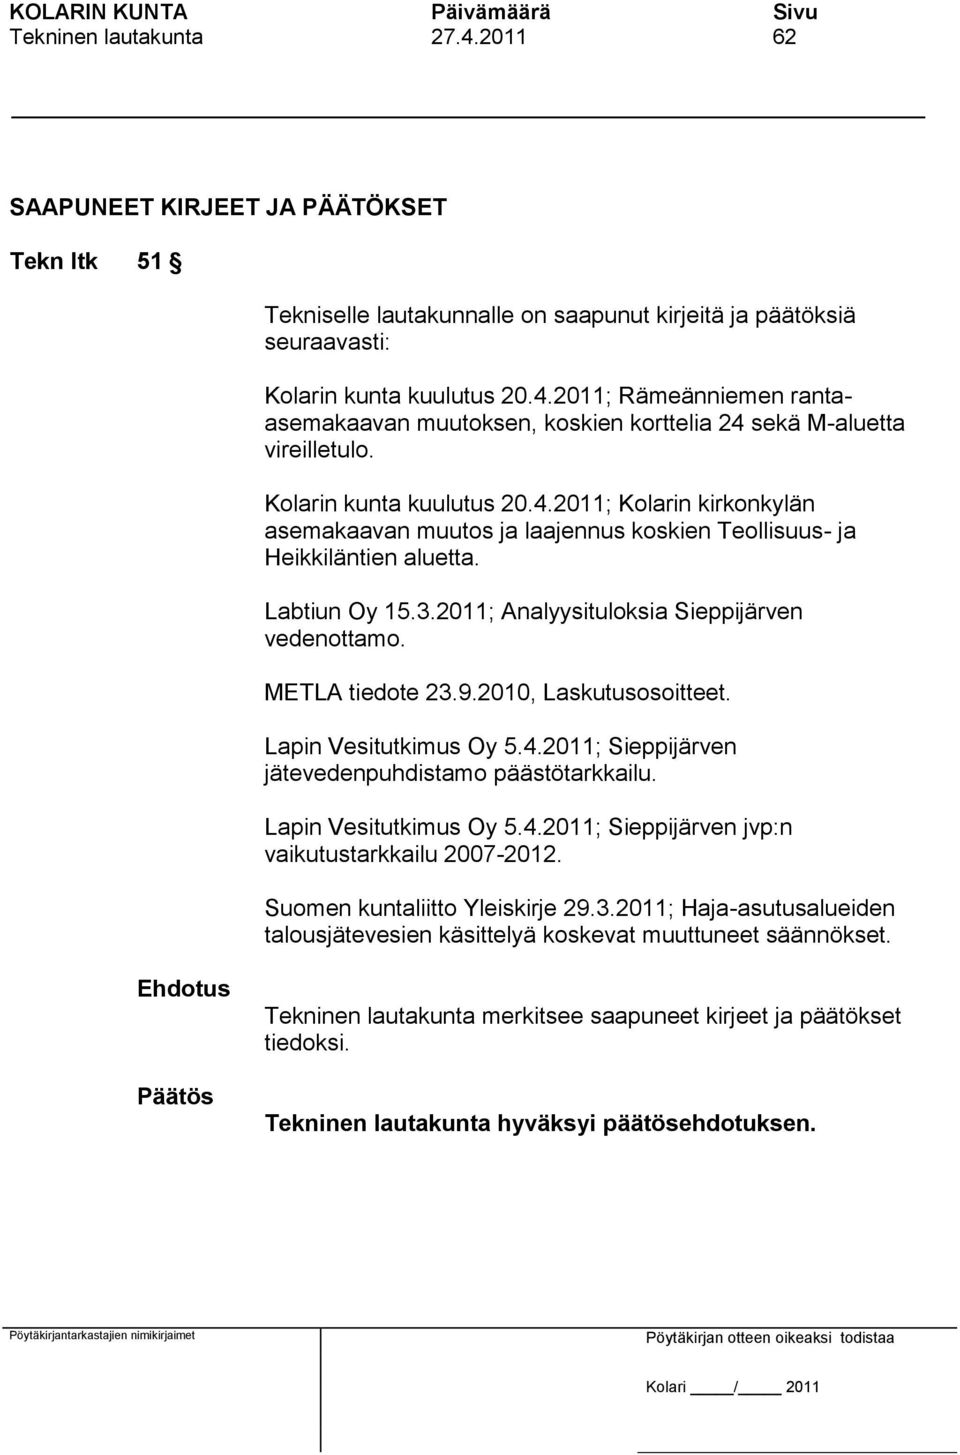 METLA tiedote 23.9.2010, Laskutusosoitteet. Lapin Vesitutkimus Oy 5.4.2011; Sieppijärven jätevedenpuhdistamo päästötarkkailu. Lapin Vesitutkimus Oy 5.4.2011; Sieppijärven jvp:n vaikutustarkkailu 2007-2012.